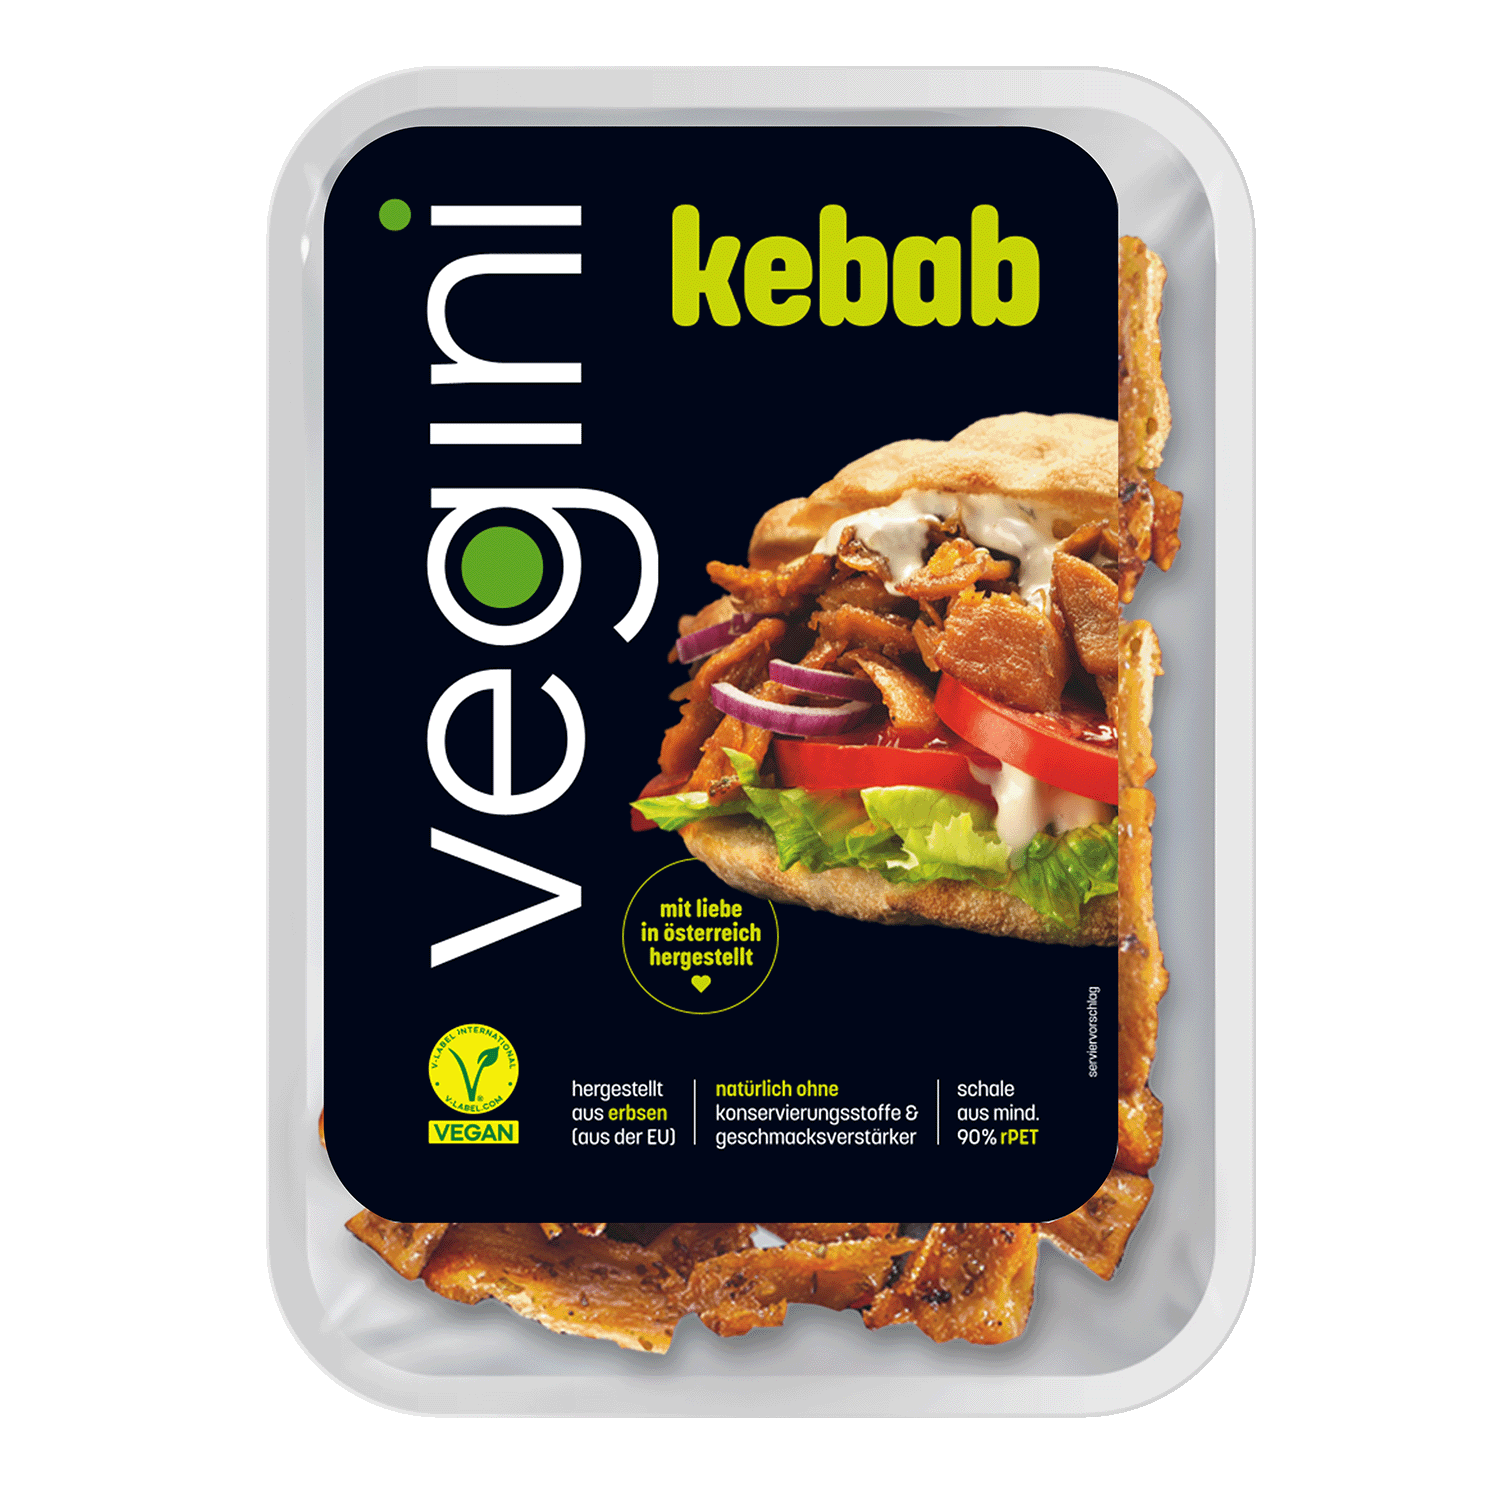 Veganer Kebab, 140g